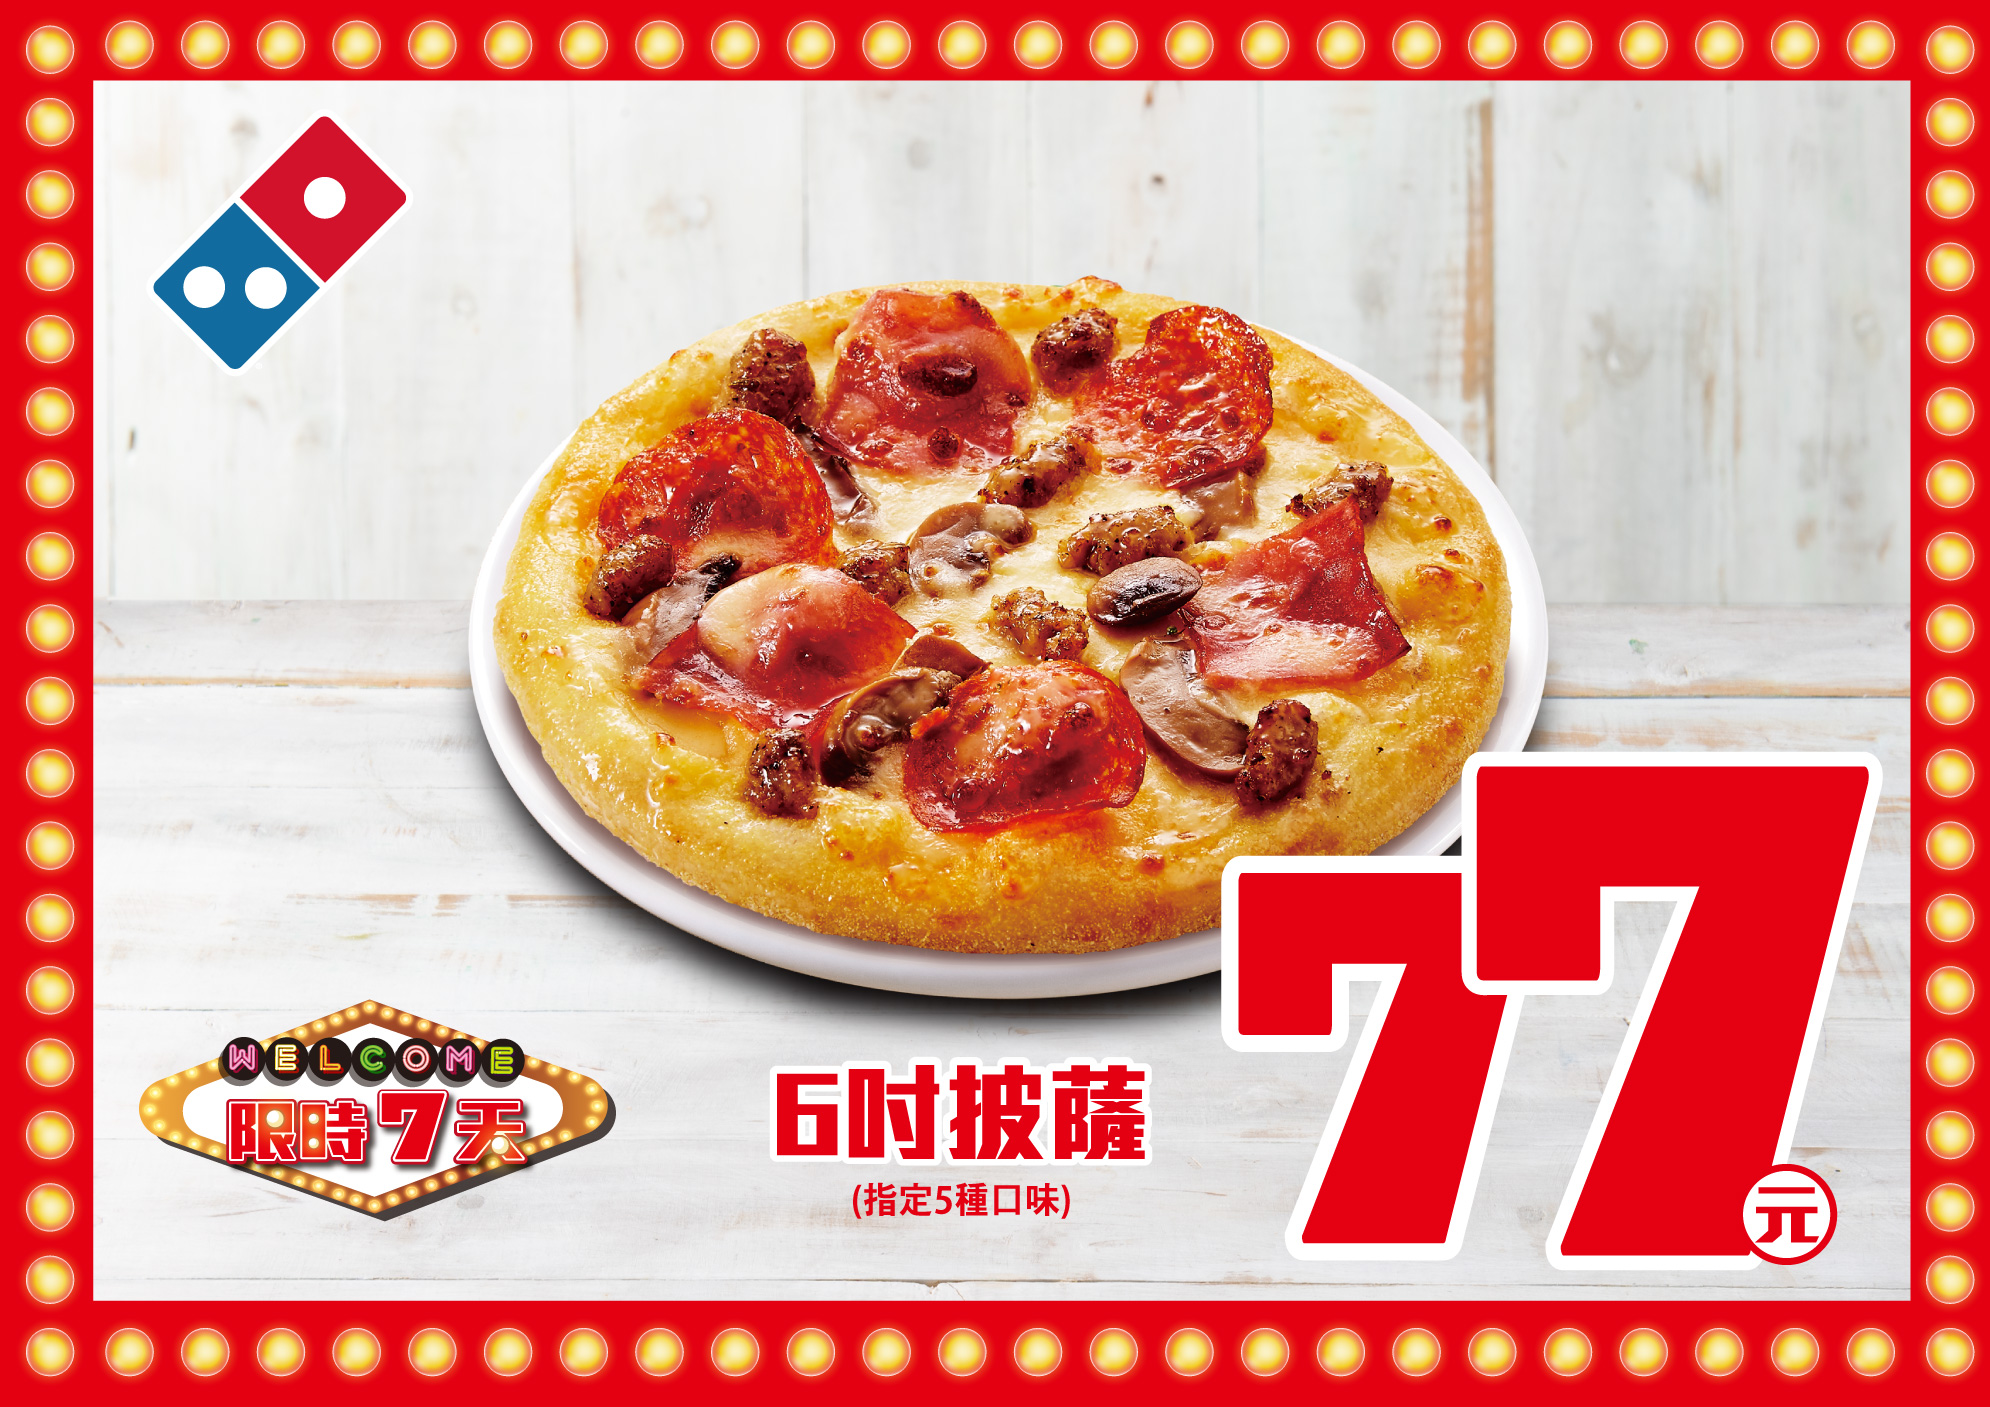 台灣達美樂「夏季777活動」包含「77 元個人披薩」、「147 元 9 吋披薩」全台限時一周開跑！